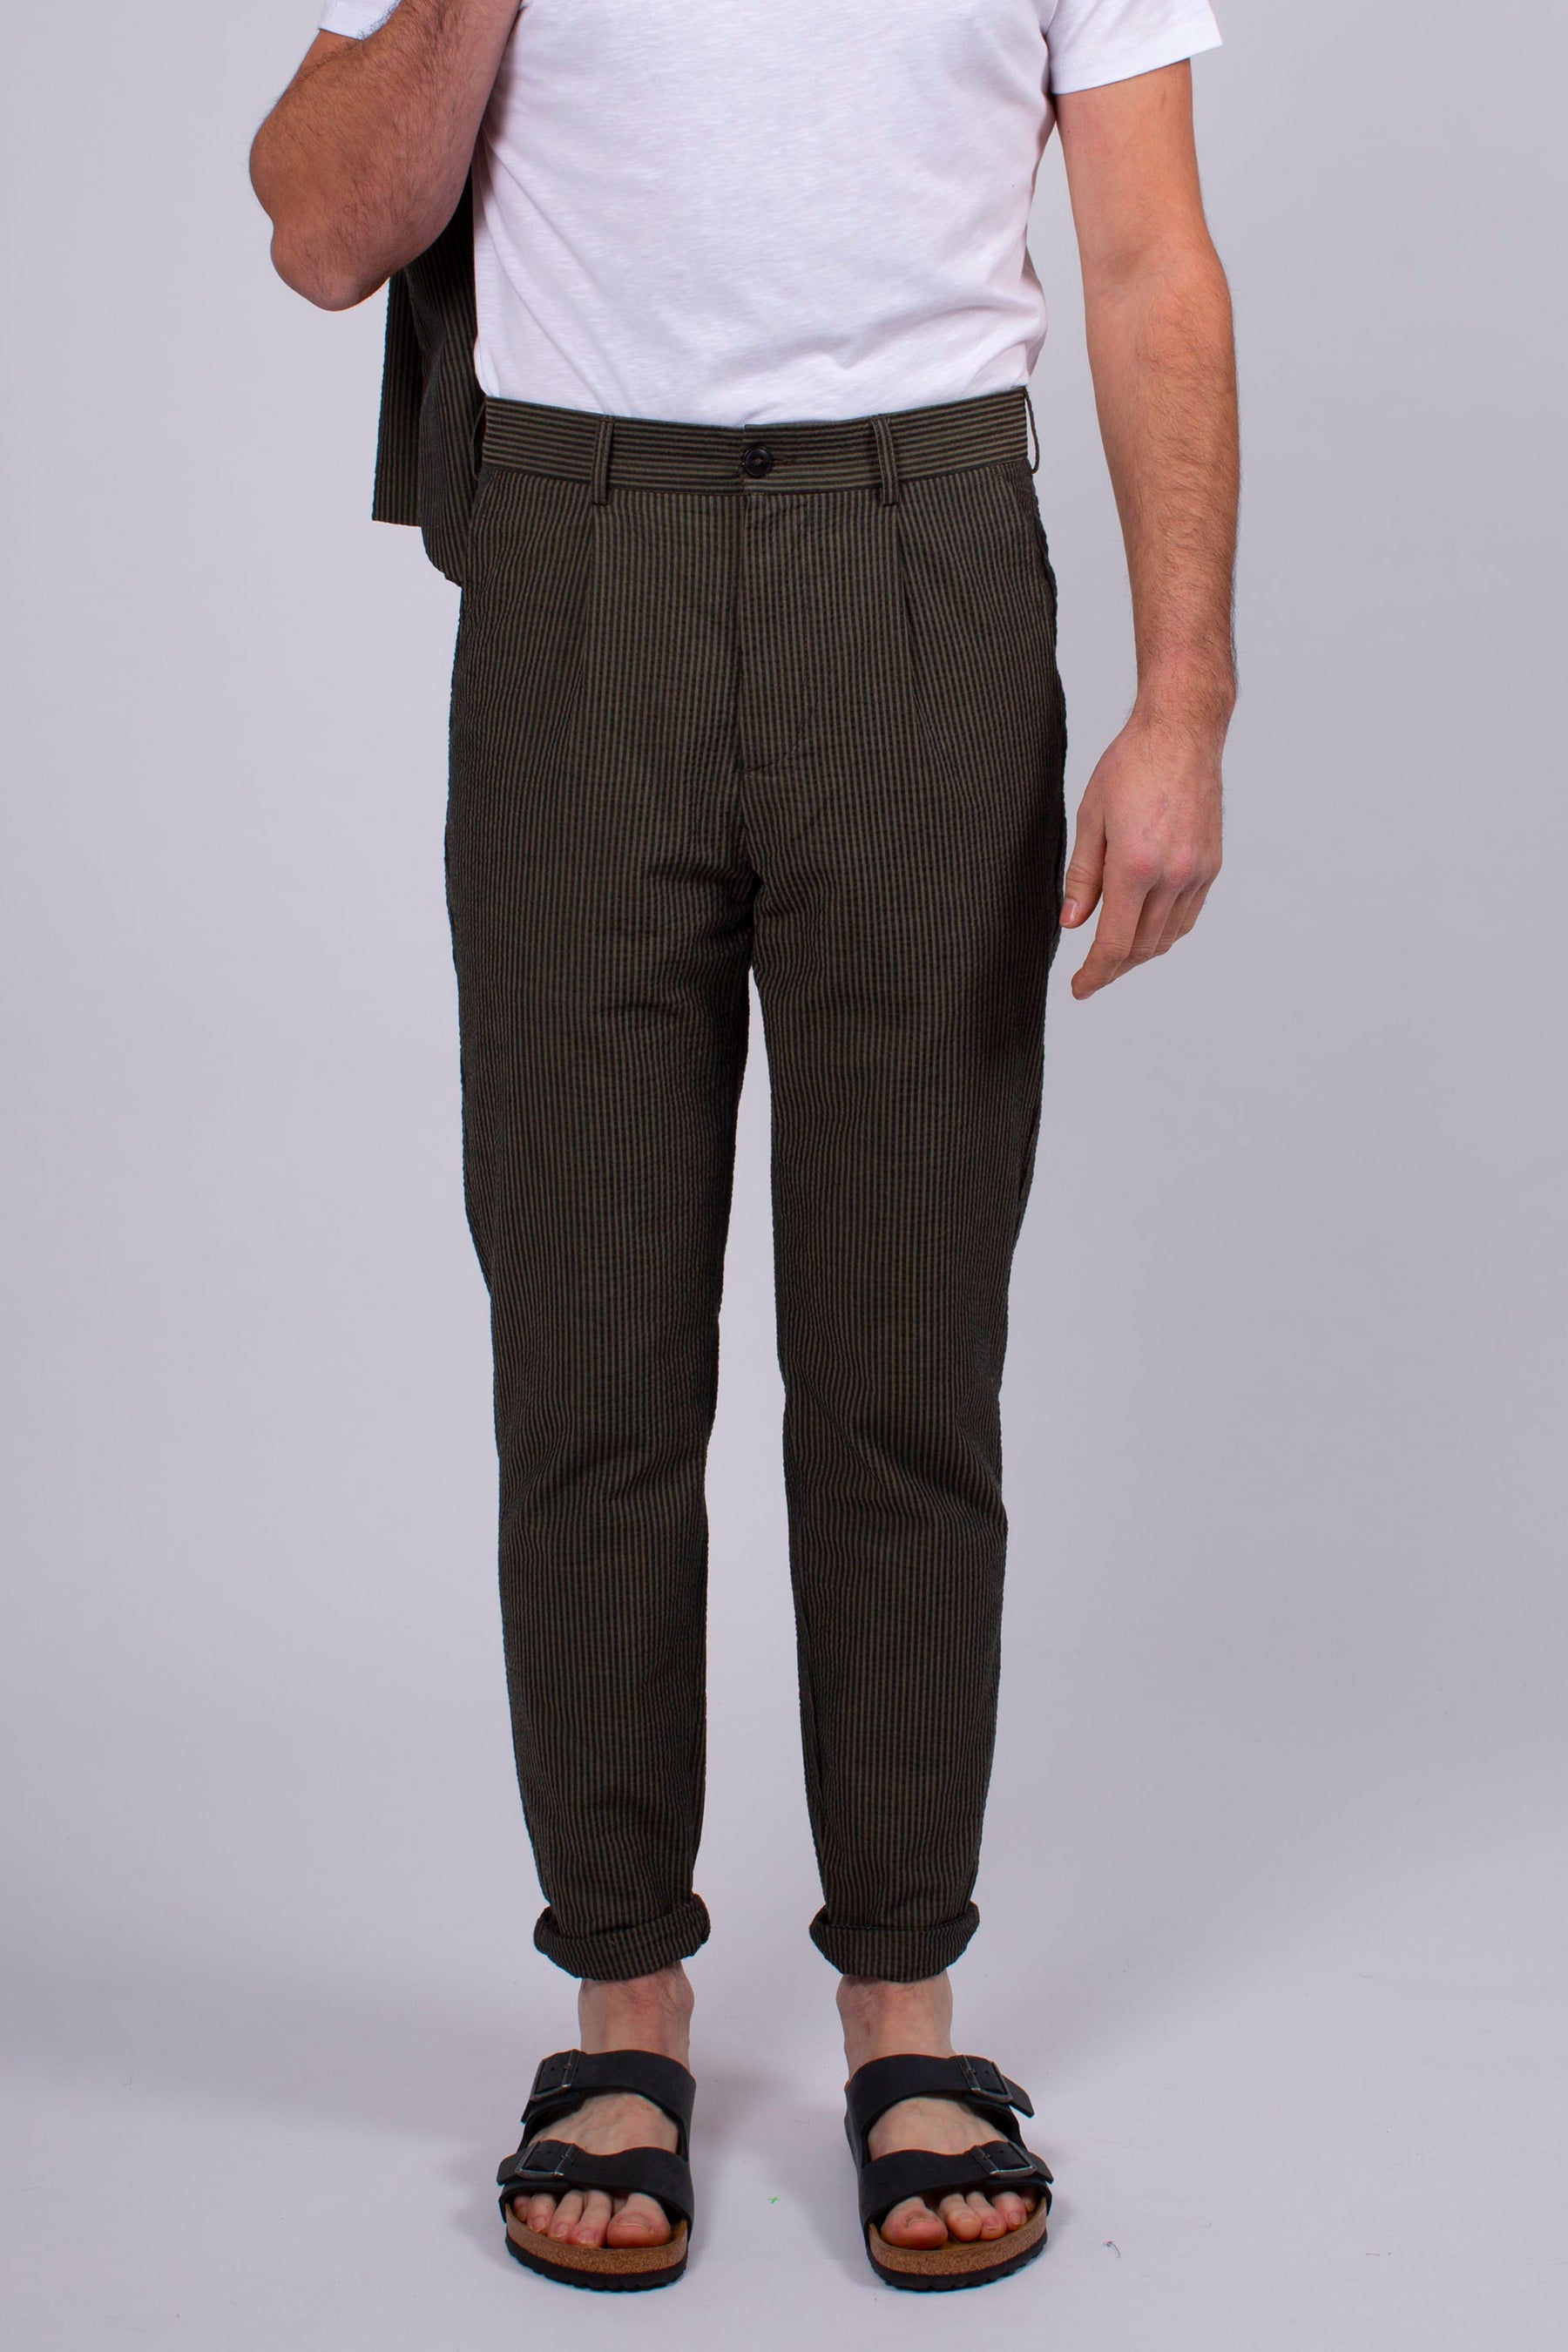 Homecore  OREL cord trousers / men